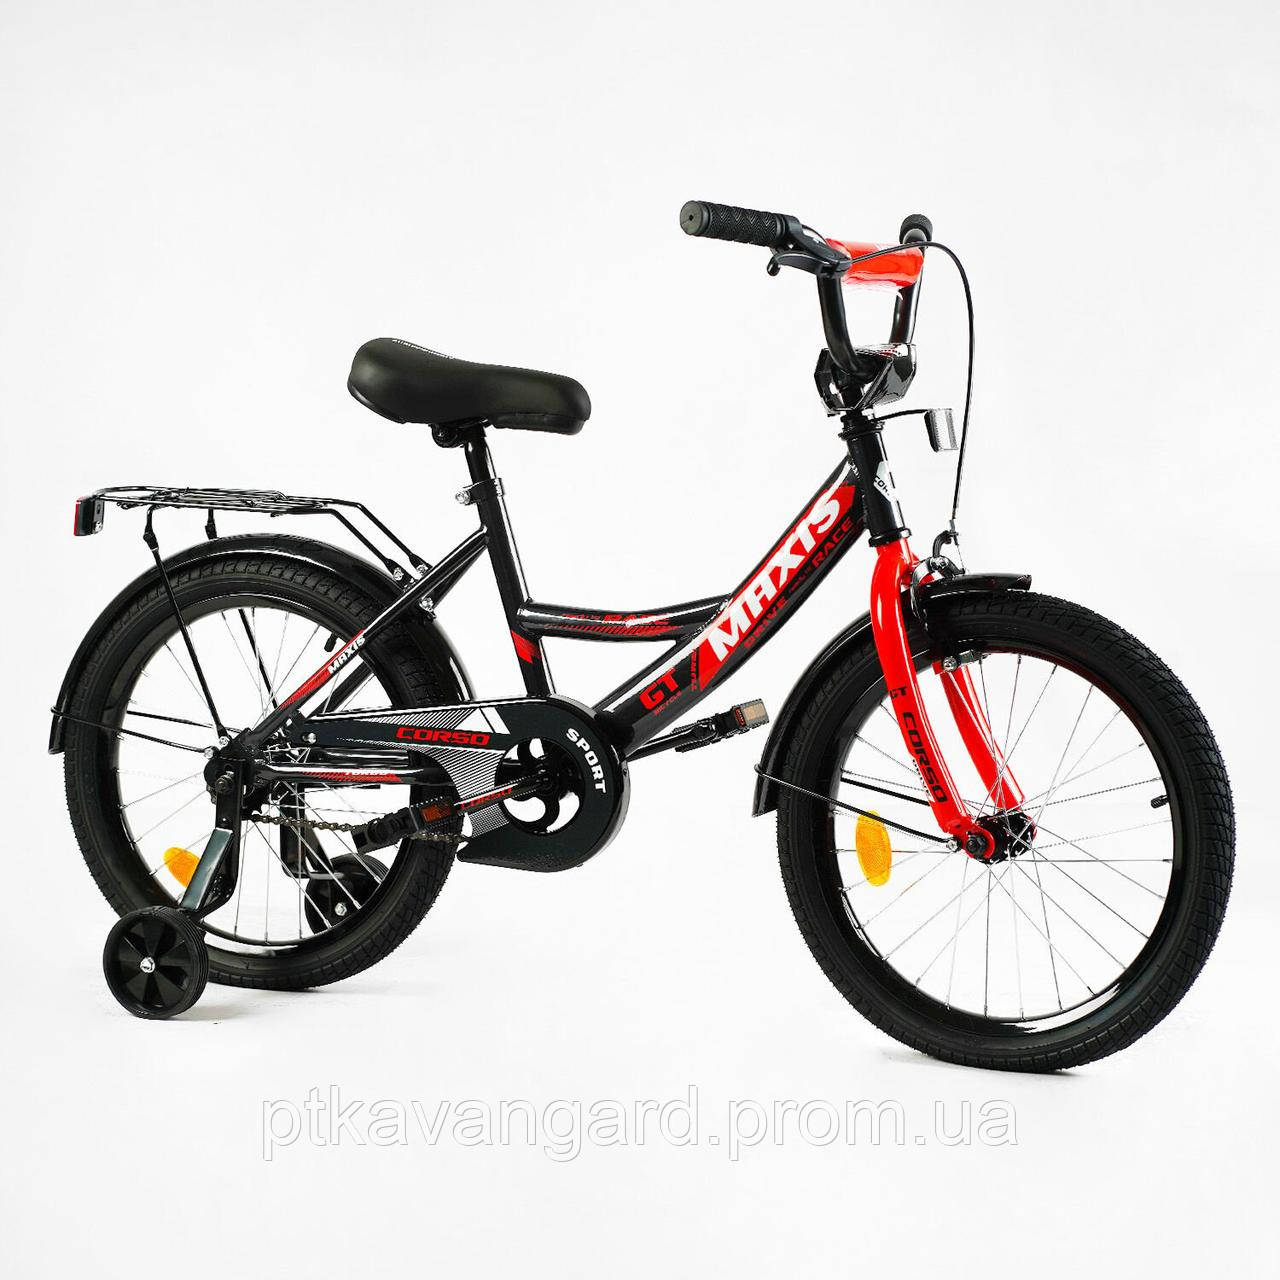 Велосипед дитячий 18" дюймів на 6-8 років, рост 110-135, додаткові колеса, Corso Maxis чорно-червоний